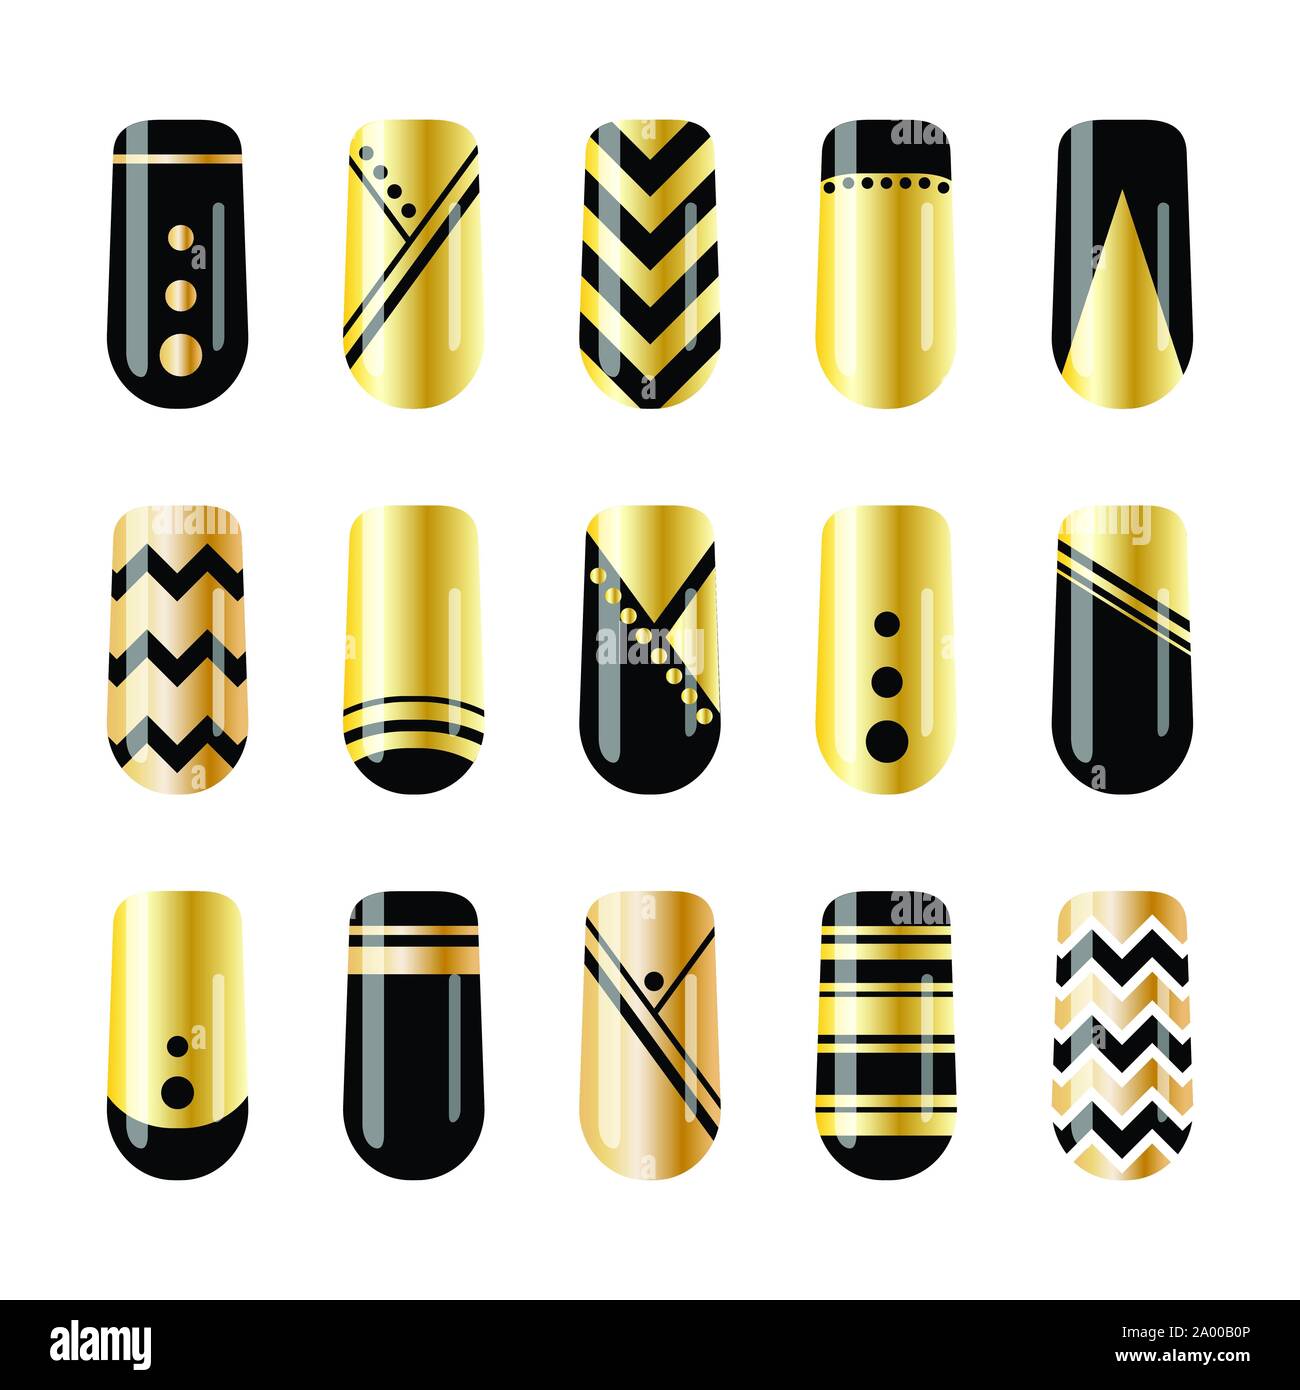 L'art d'ongle ongles en or et noir design autocollants Illustration de Vecteur